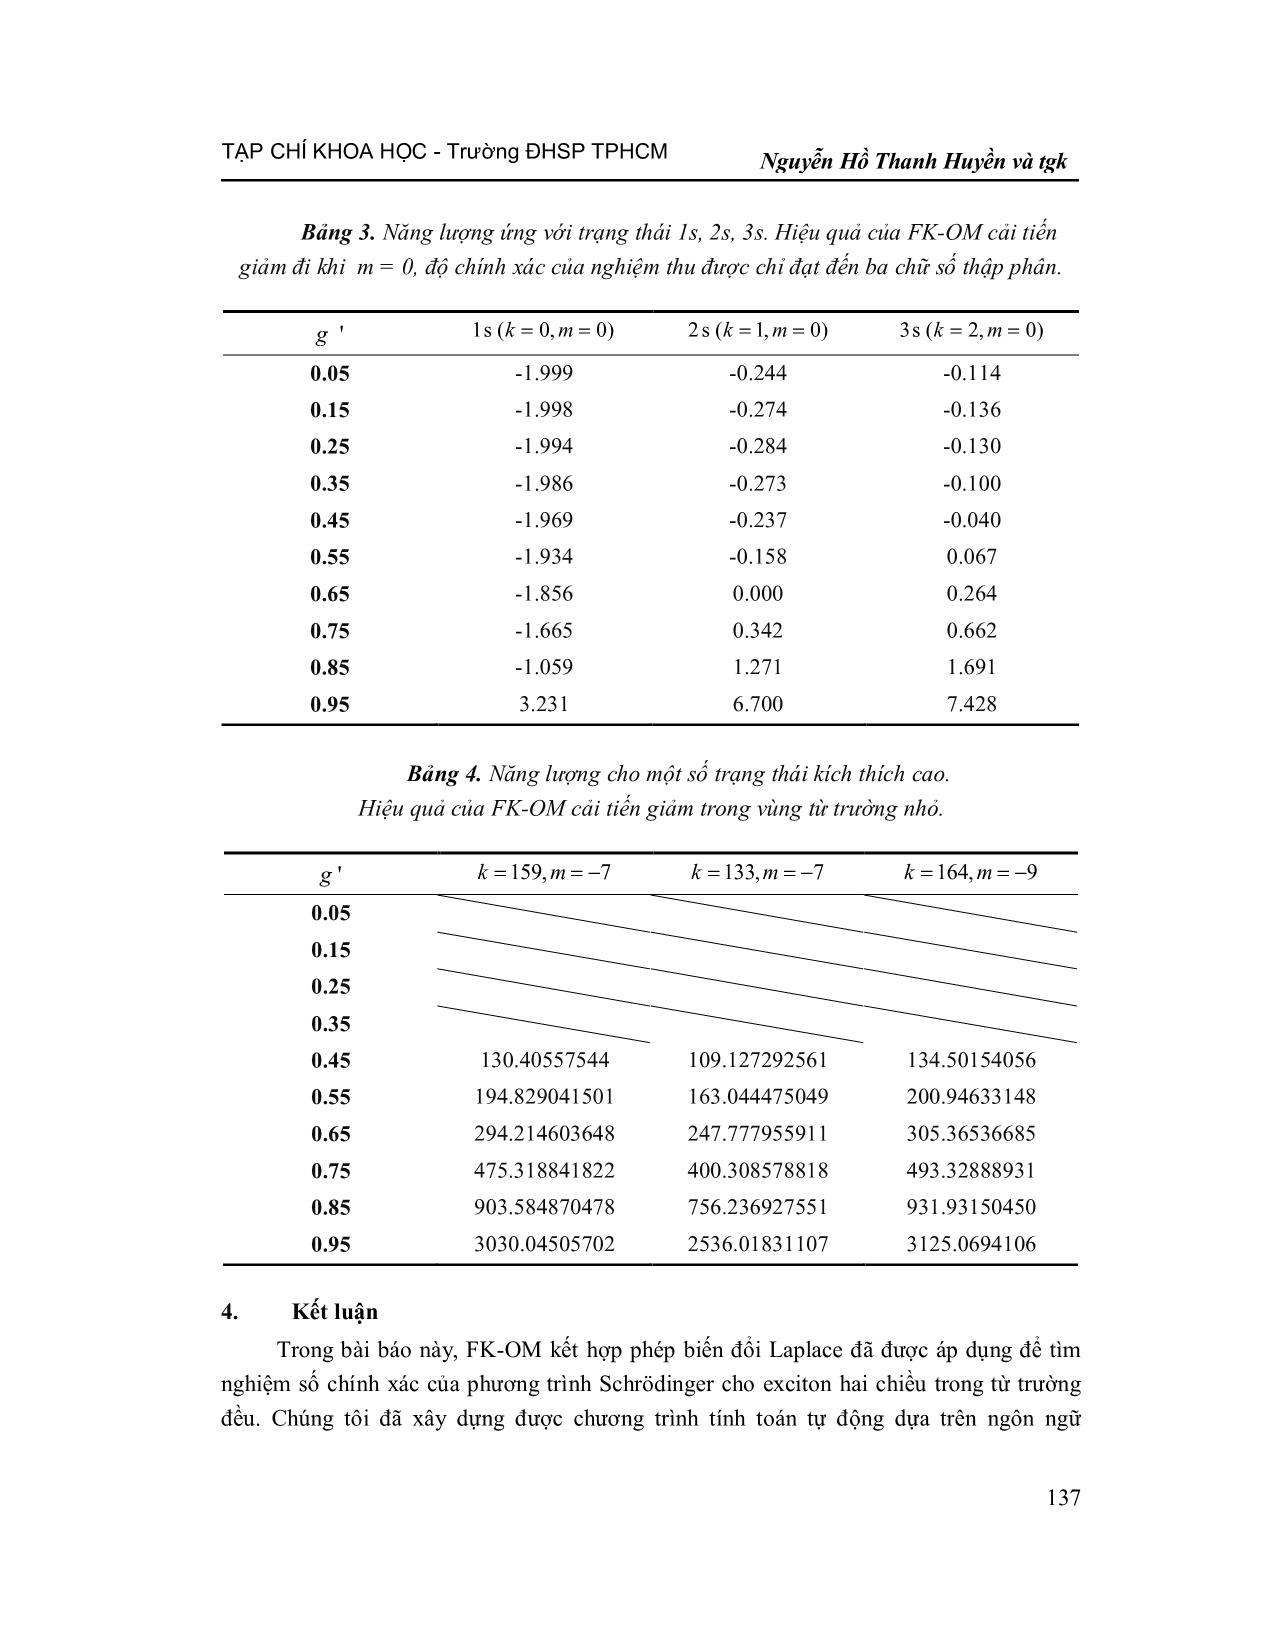 Phương pháp toán tử FK cải tiến giải phương trình Schrödinger cho Exciton hai chiều trong từ trường đều trang 9